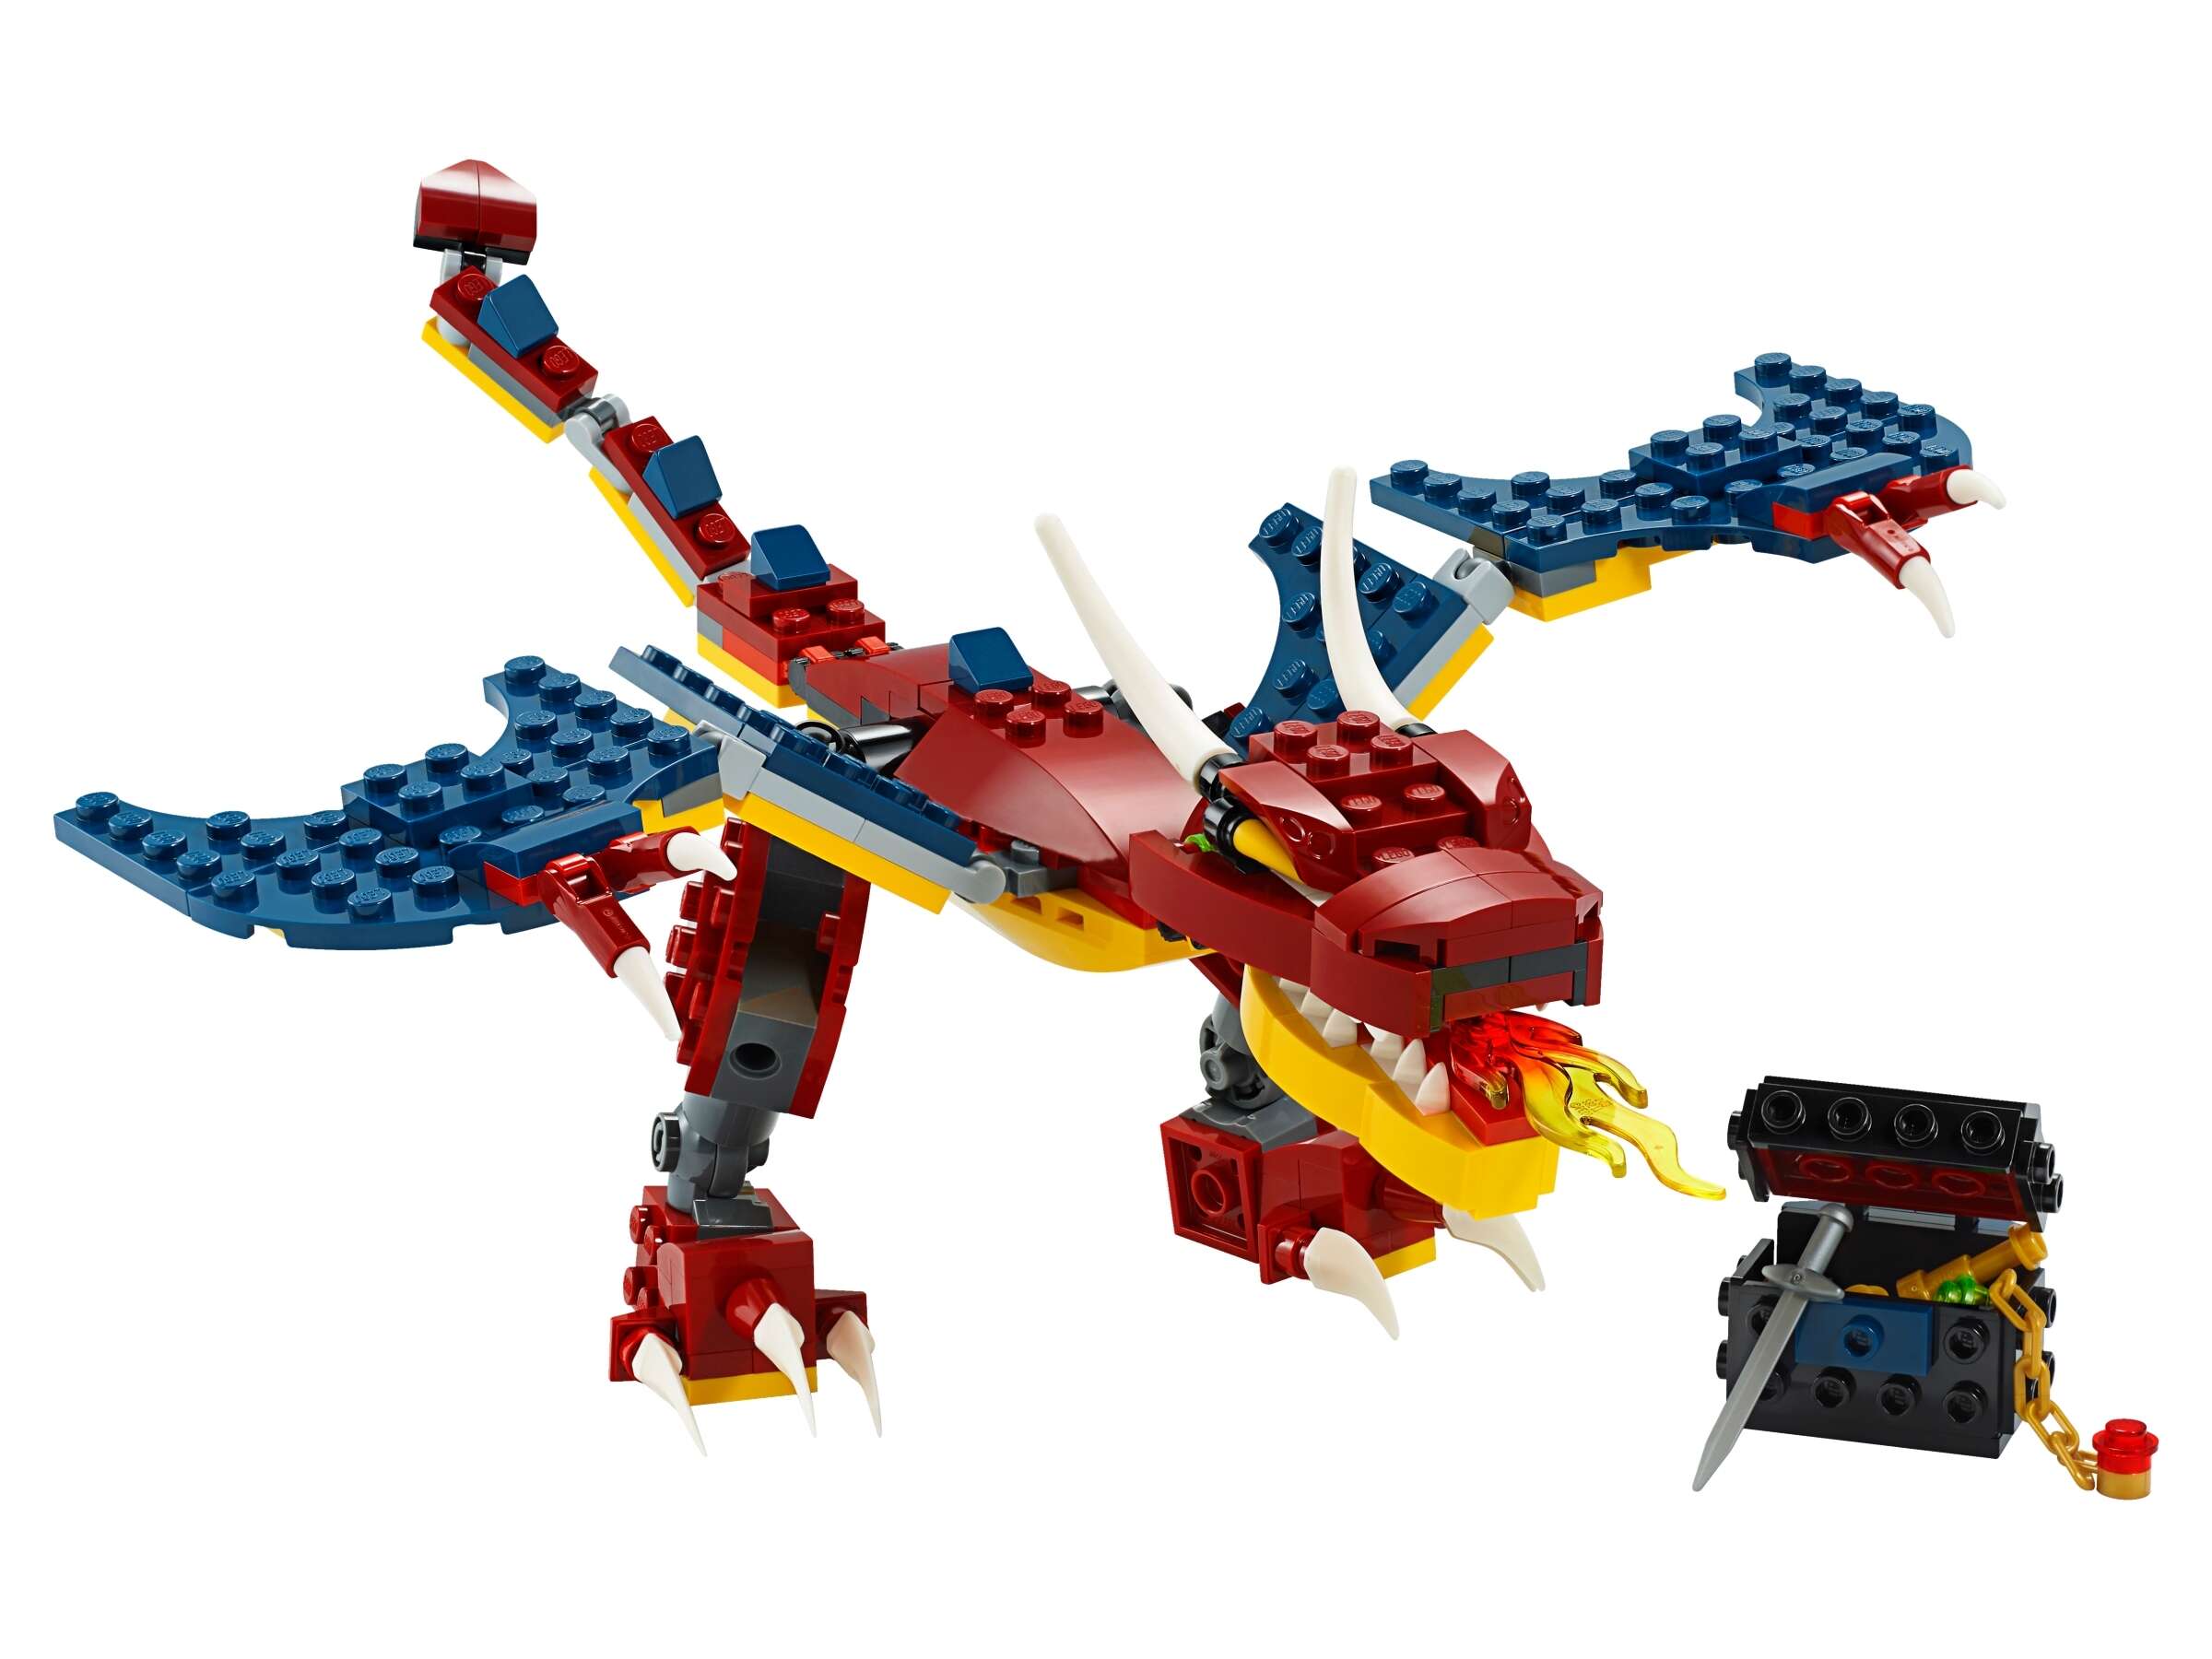 LEGO 31102 Creator 3-in-1 Feuerdrache, Säbelzahntiger oder Skorpion Bauset